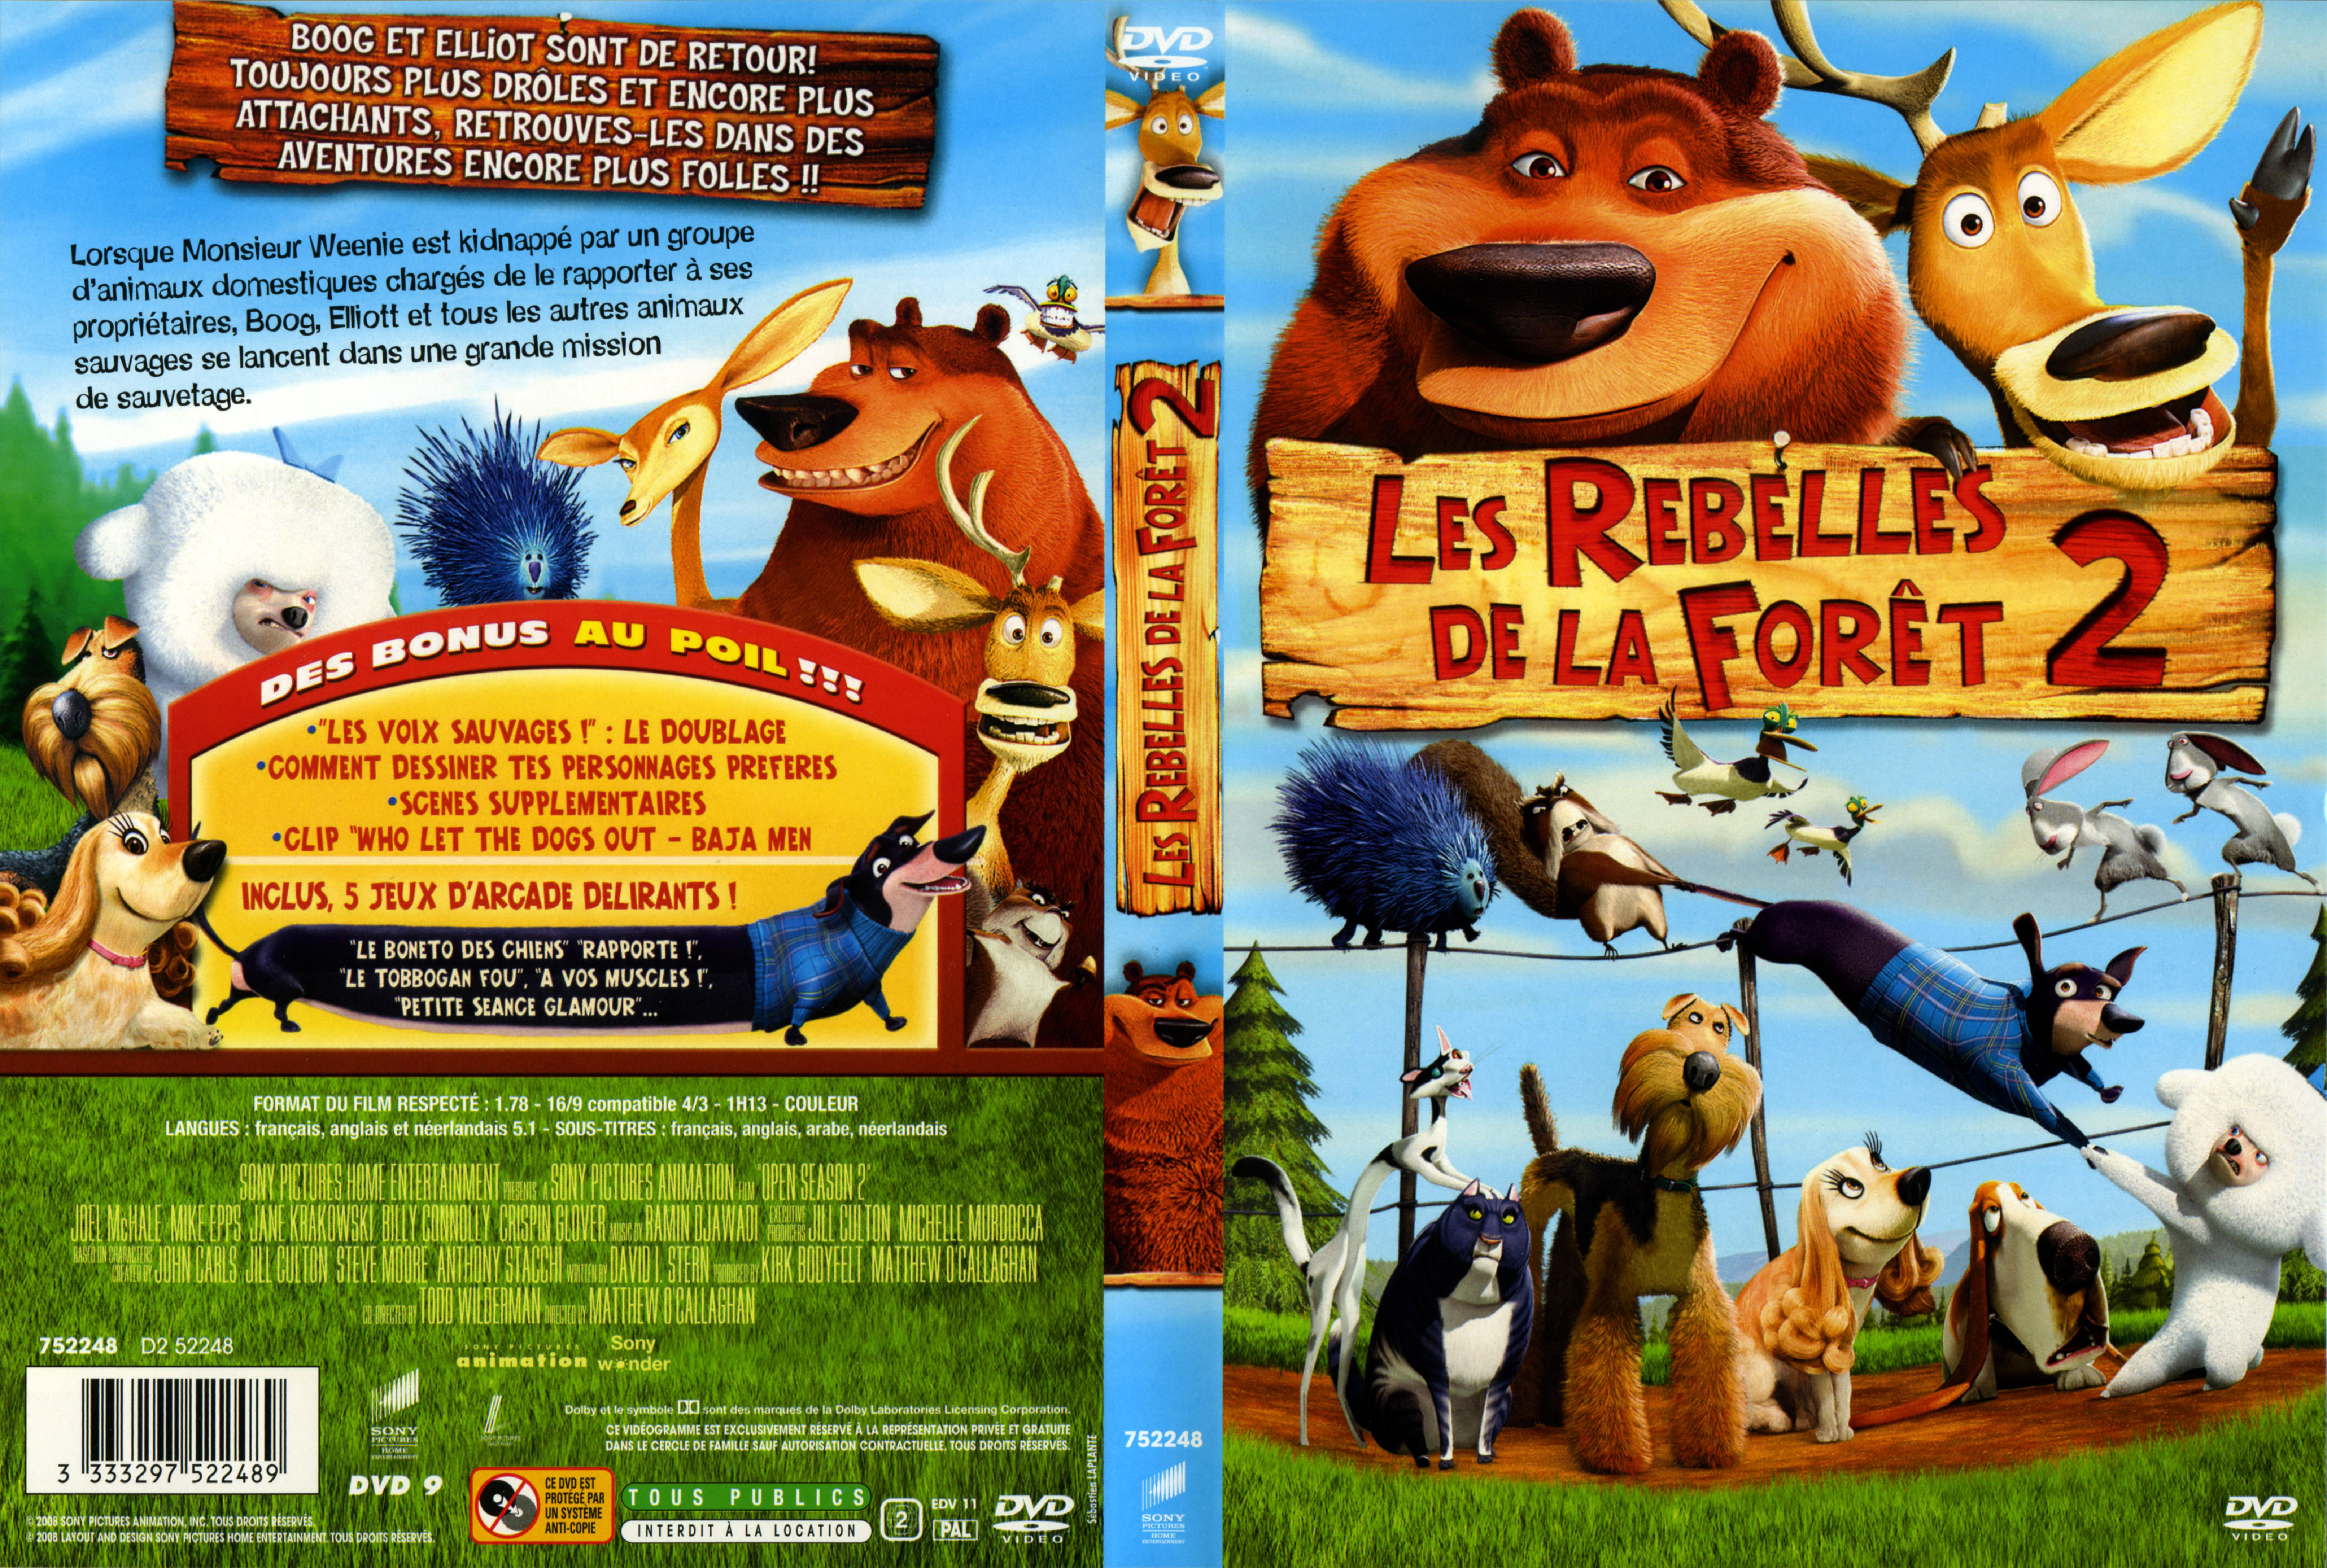 Jaquette DVD Les rebelles de la fort 2